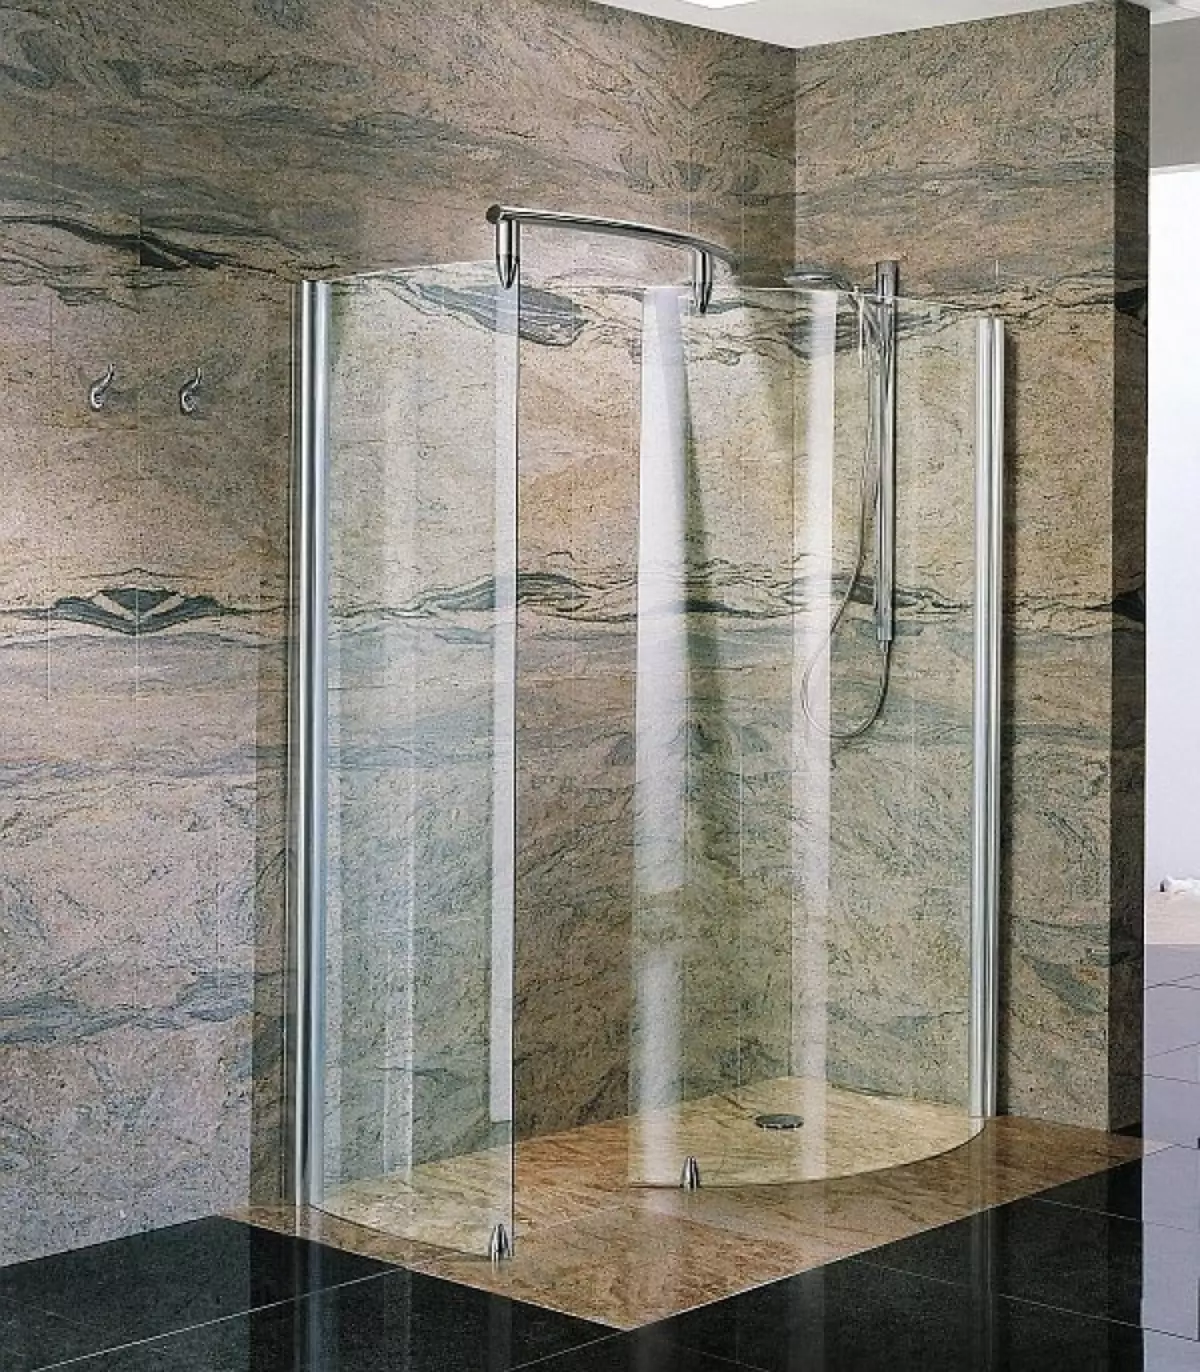 Stort in die badkamer sonder kajuit (86 foto's): Badkamer ontwerp opsies met stort sonder palet en teël tente, projekte 21384_56